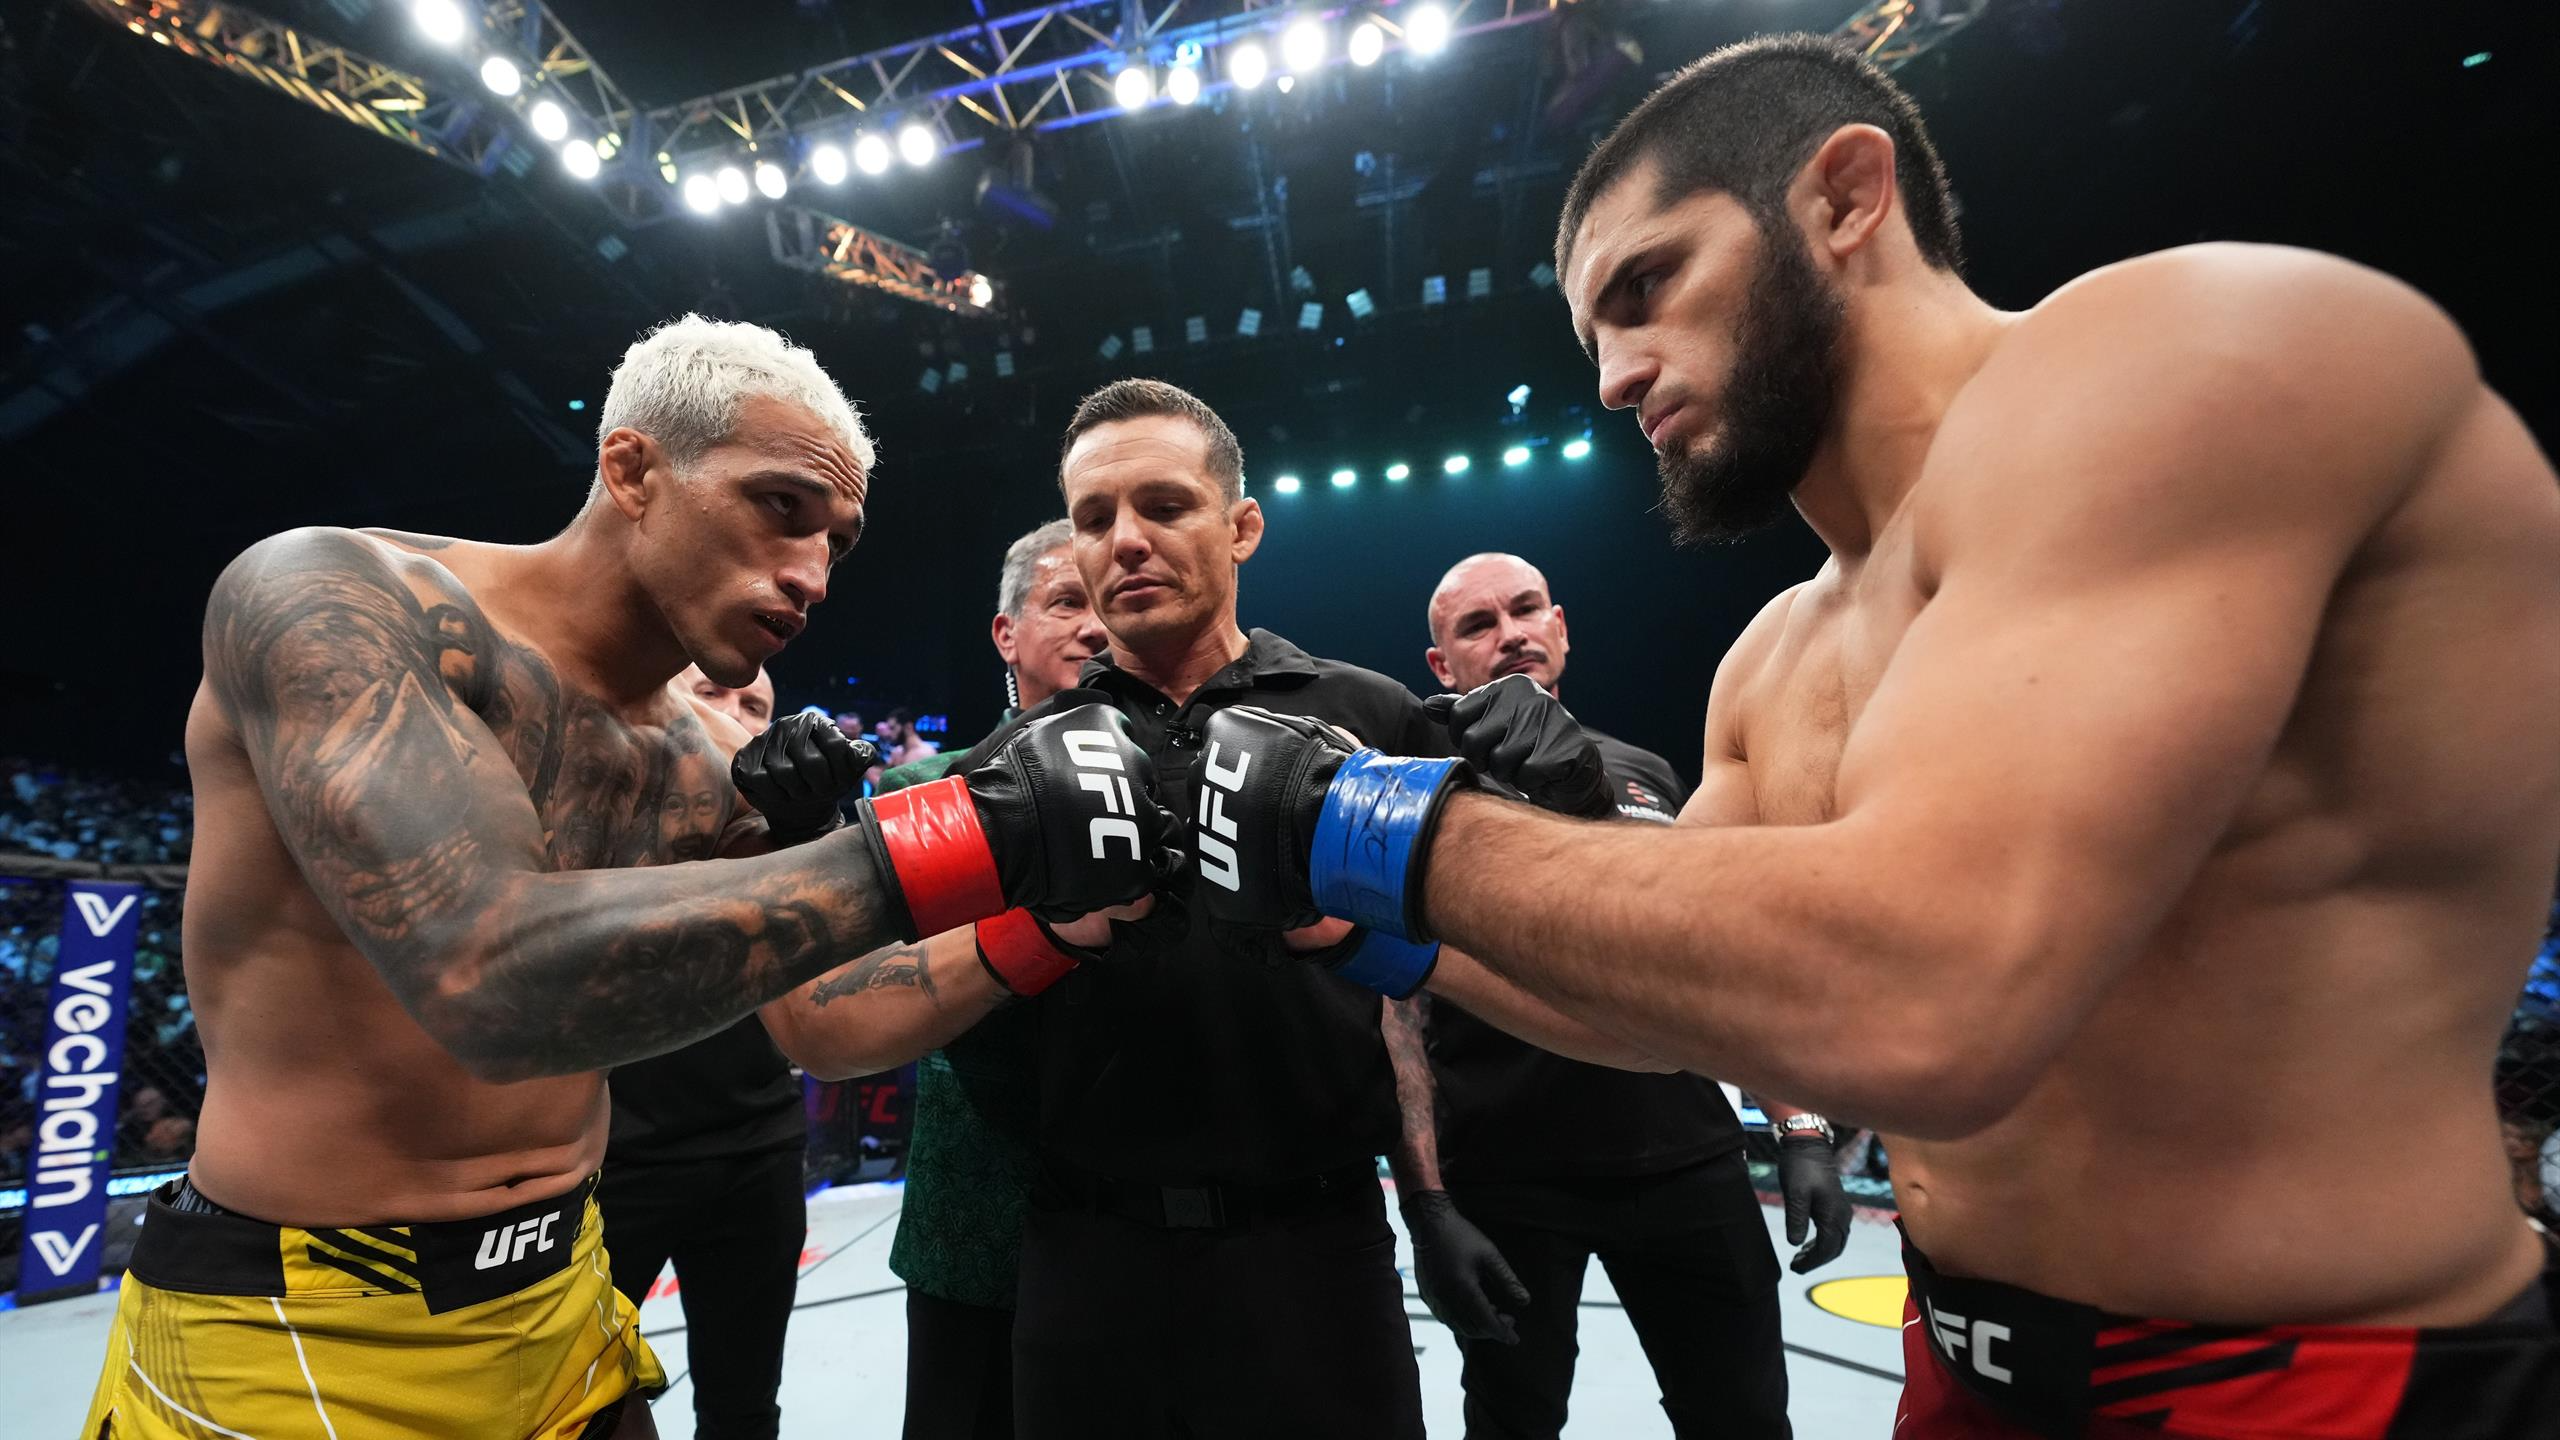 Gamrot To Backup Makhachev vs Oliveira 2 At UFC 294 In Abu Dhabi